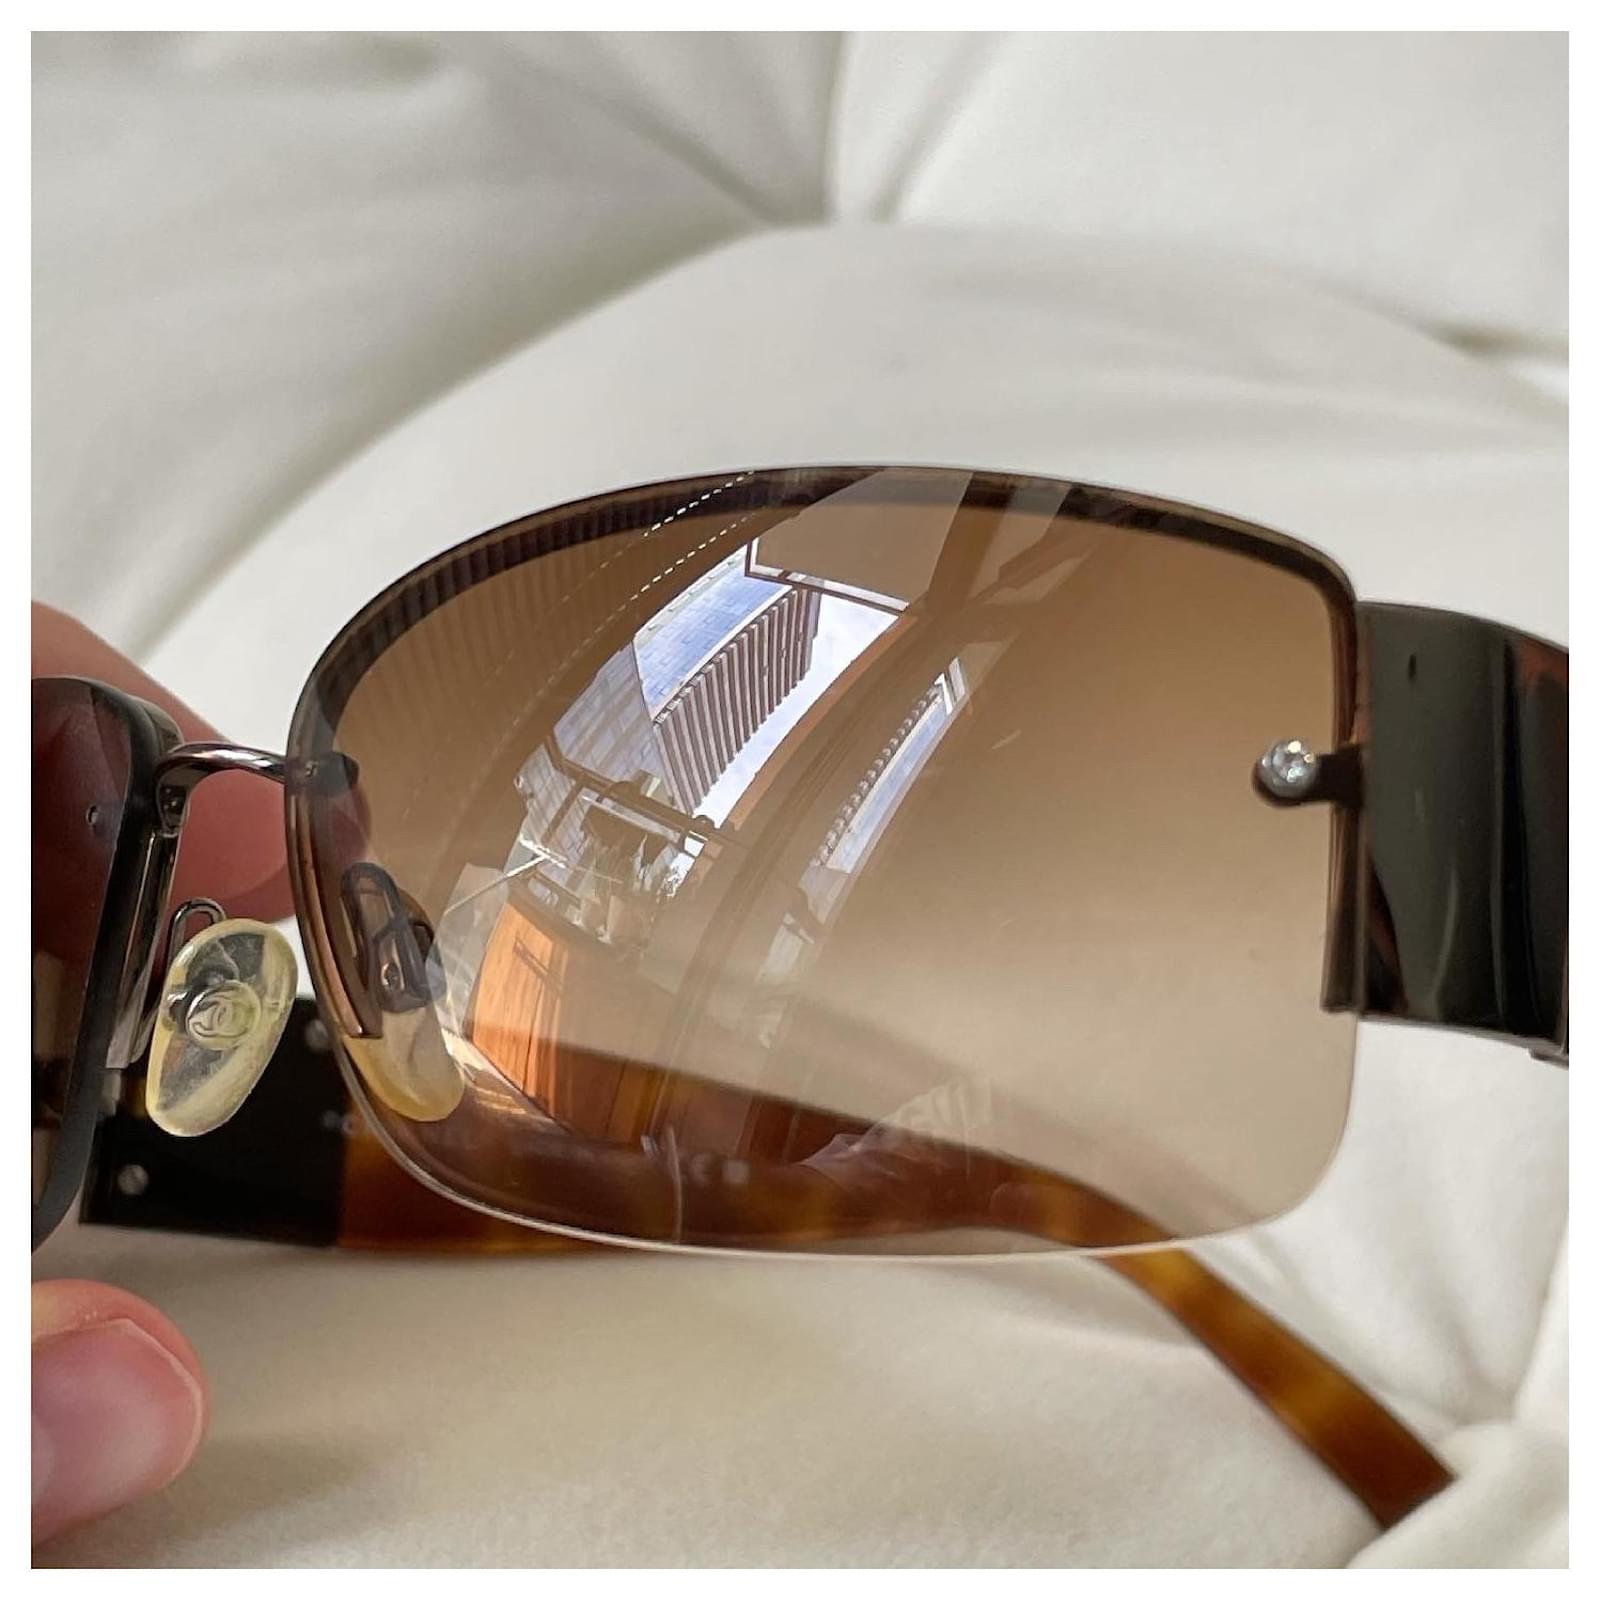 Sunglasses Chanel Brown in Plastic - 34249546